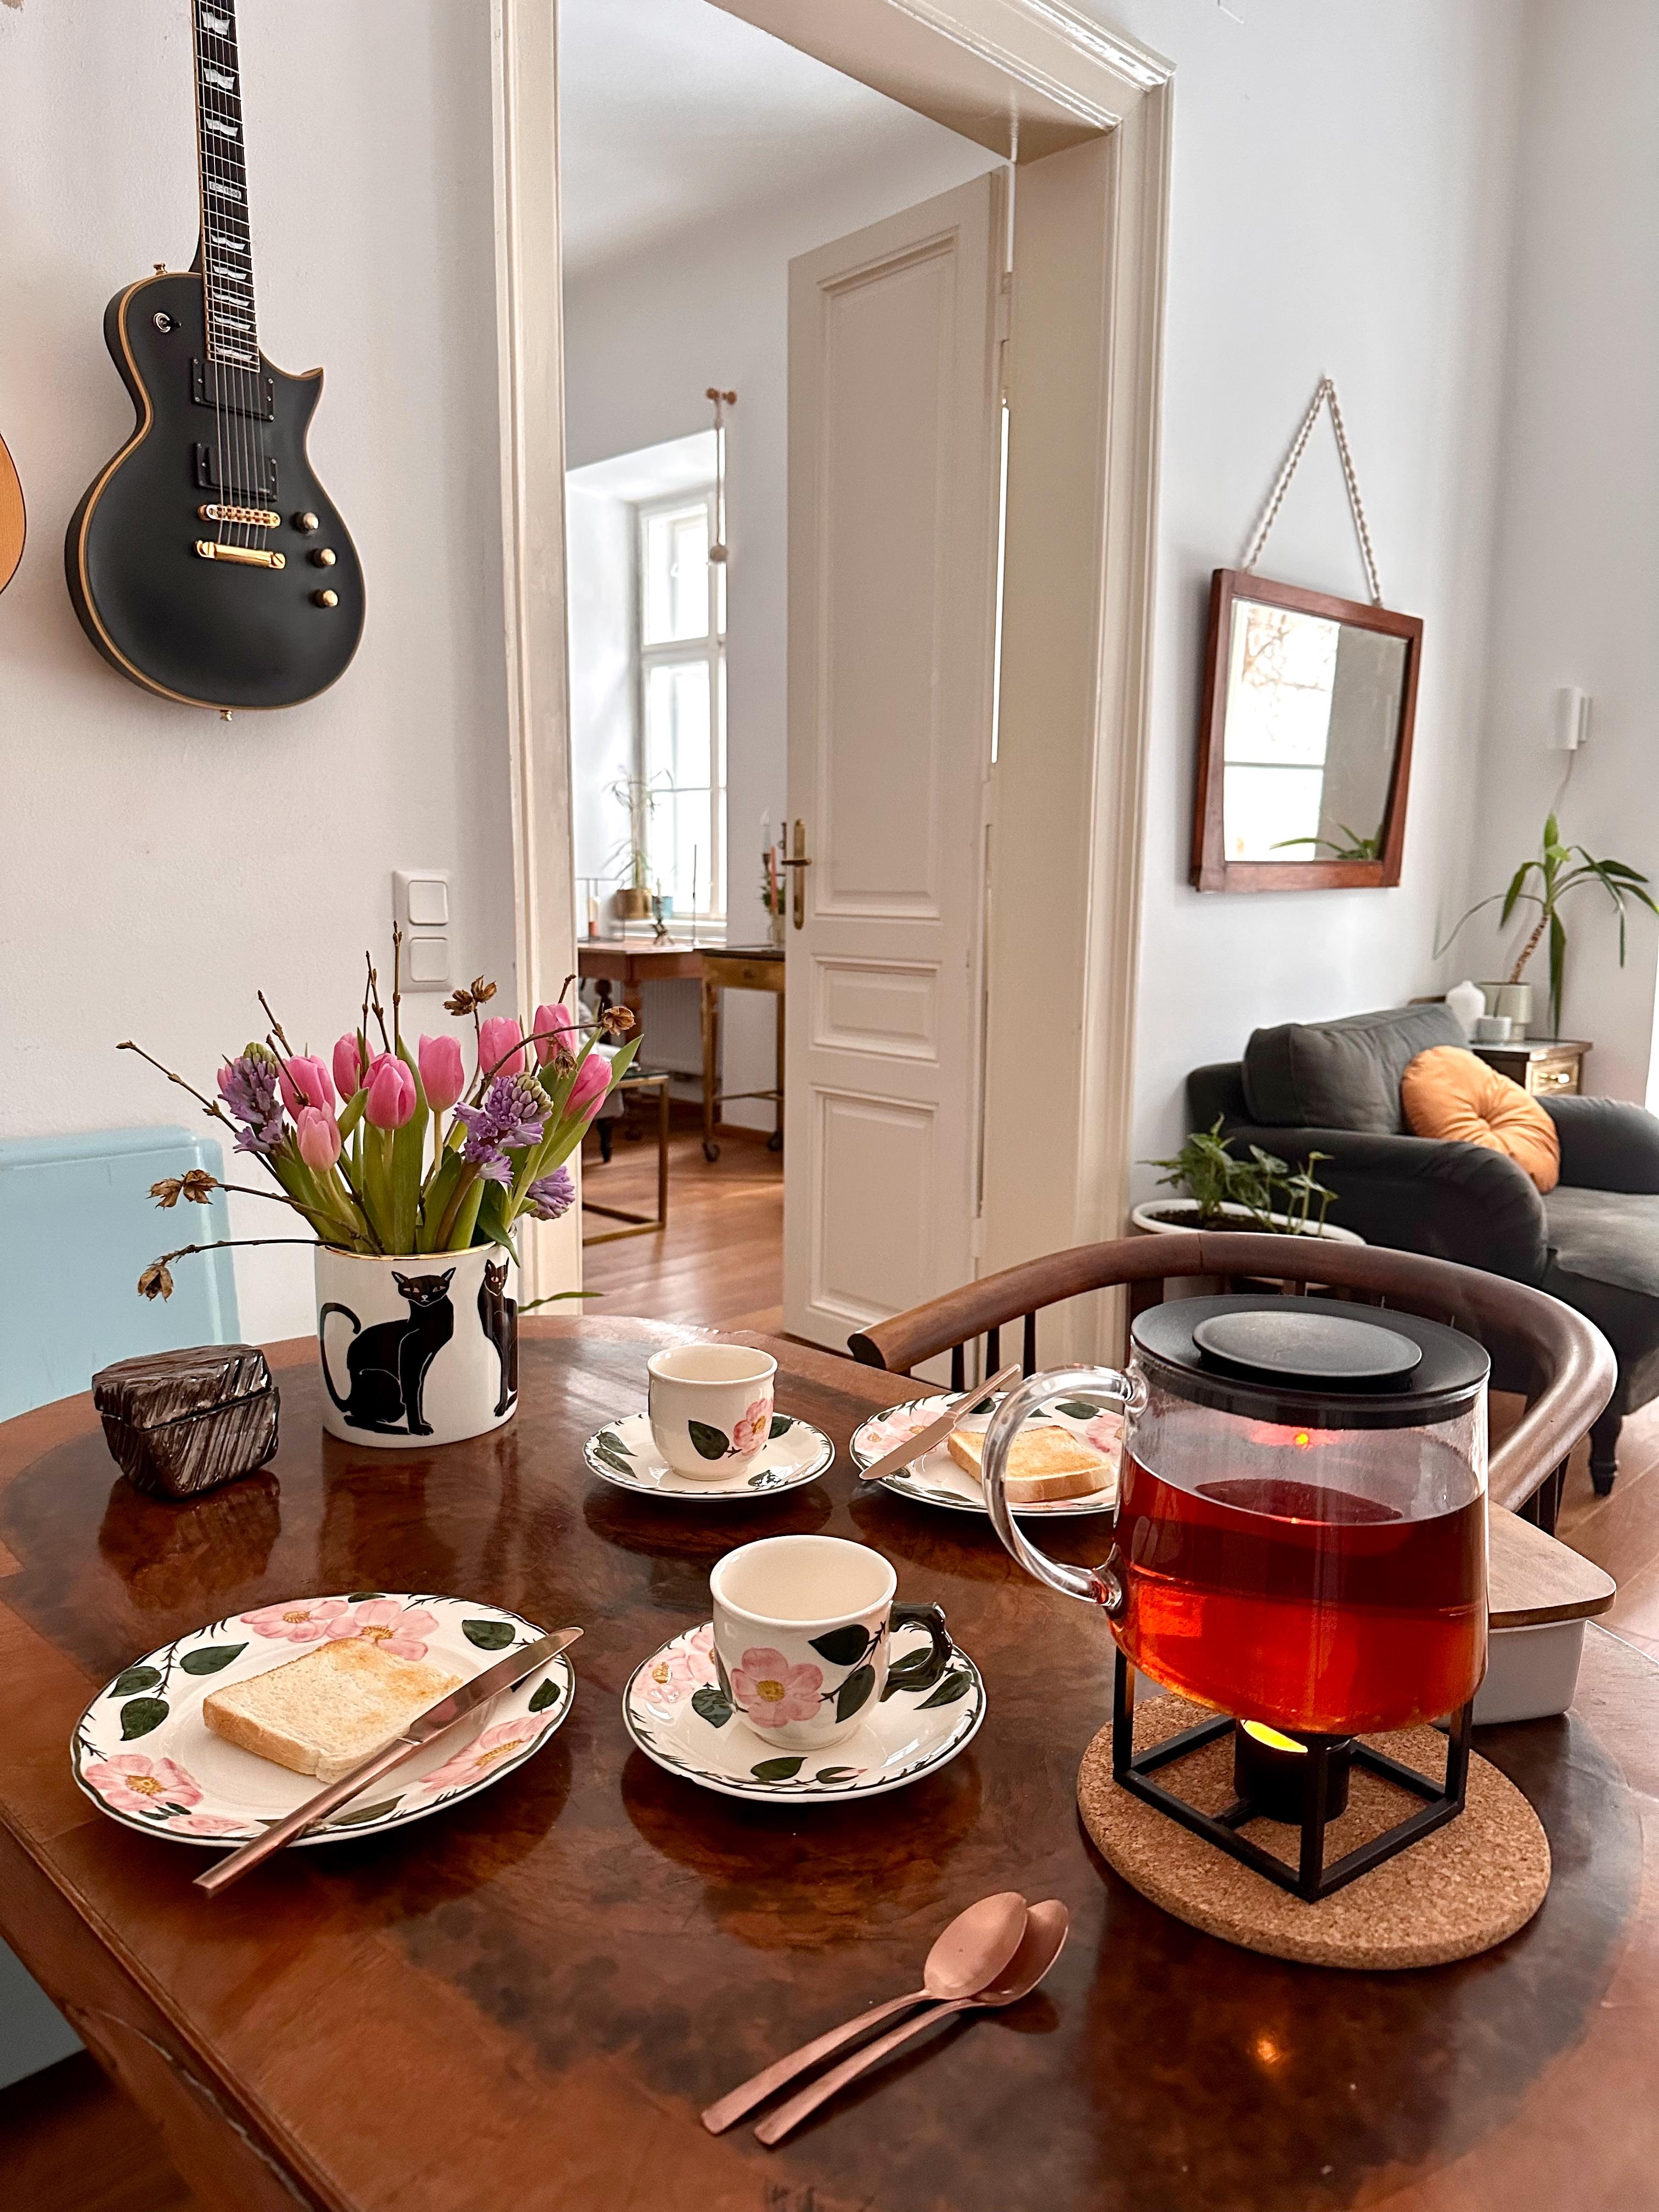 Frühstück :)

#frühstück #esstisch #tisch #wohnzimmer #vintage #geschirr #keramik